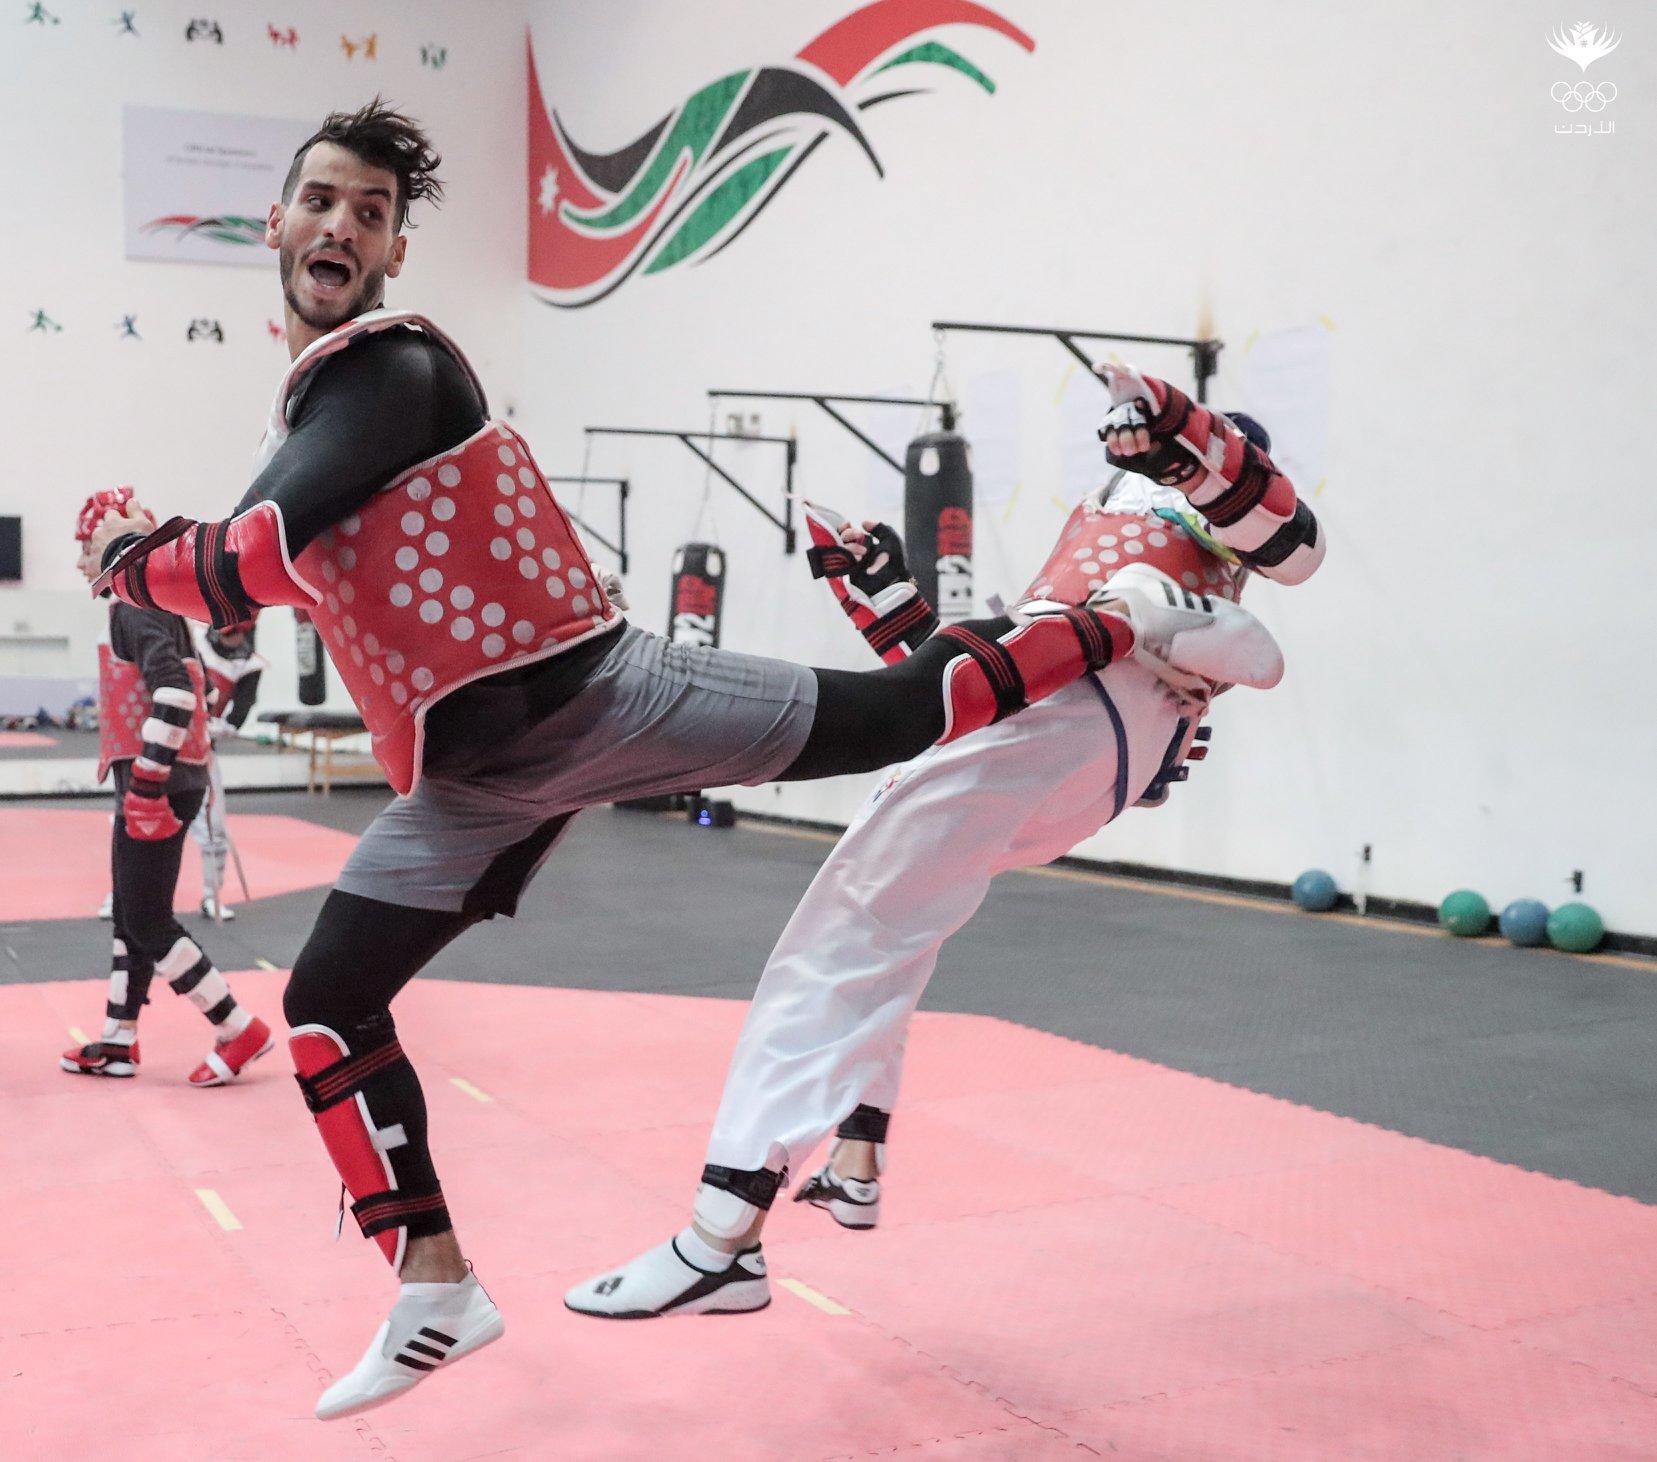 أحمد أبو غوش خلال مشاركته في بطولة كأس الرئيس التي استضافتها مدينة أنطاليا التركية. (اللجنة الأولمبية الأردنية)